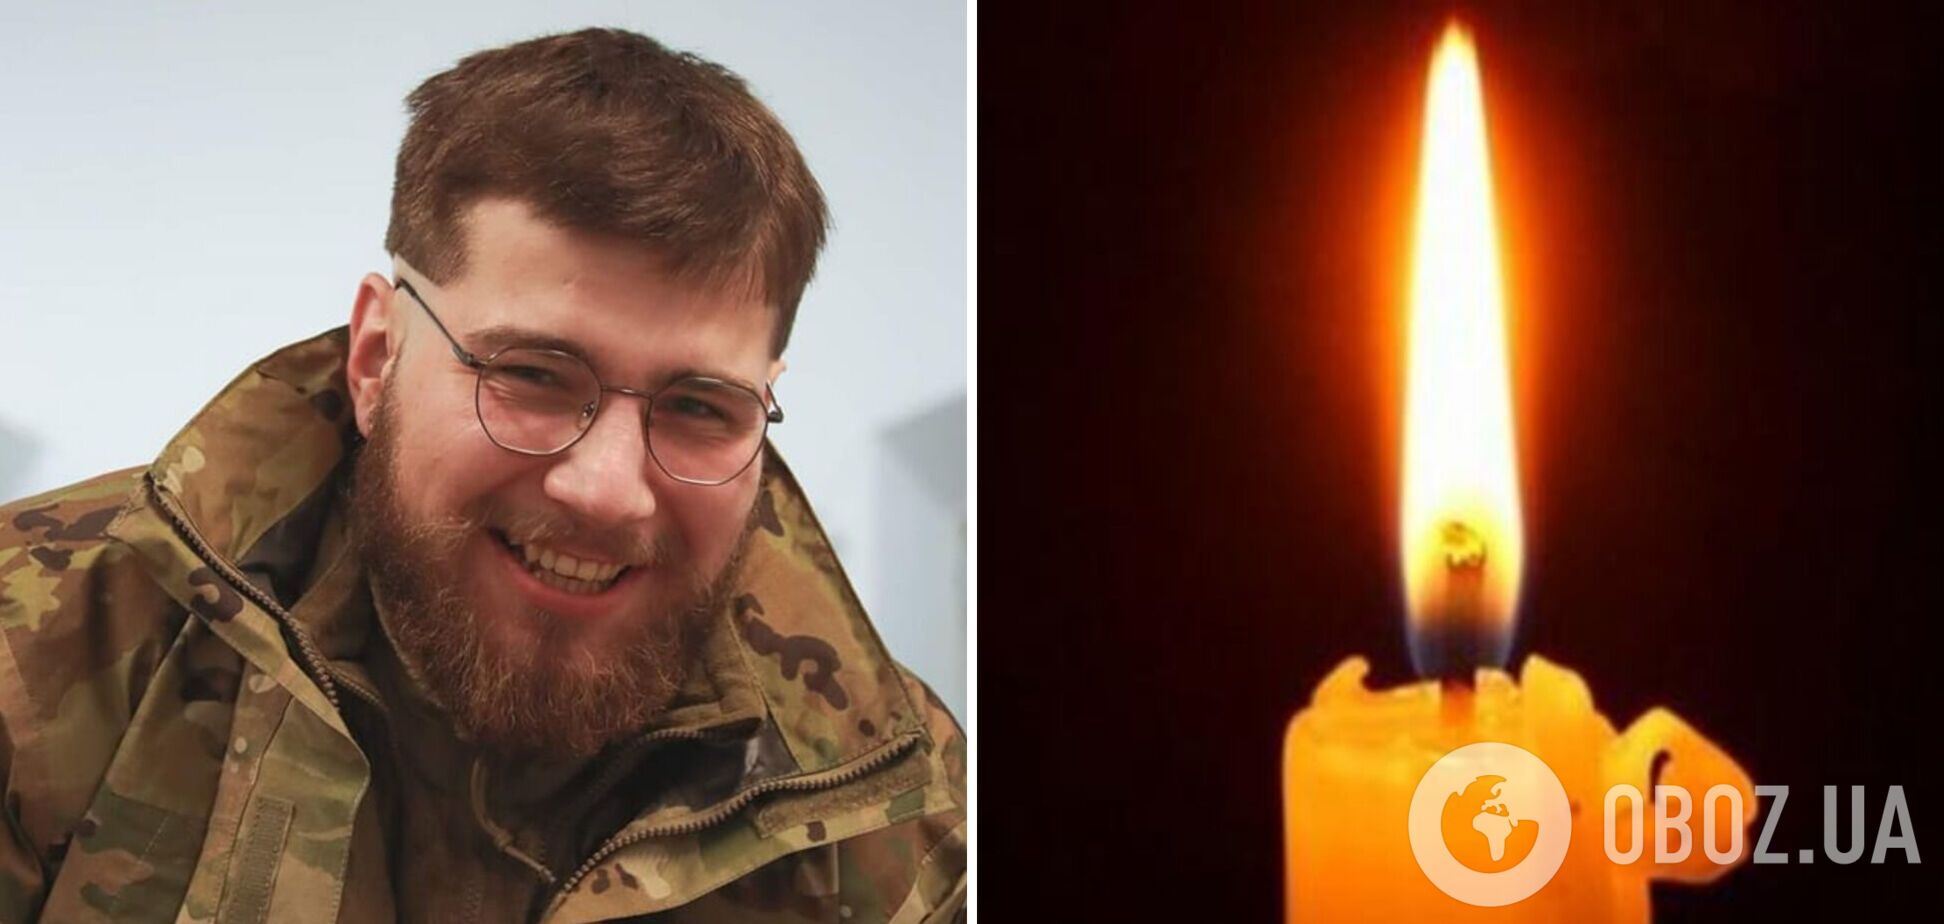 Замість магістратури пішов на фронт: під Бахмутом загинув молодий історик Ярослав Савченко